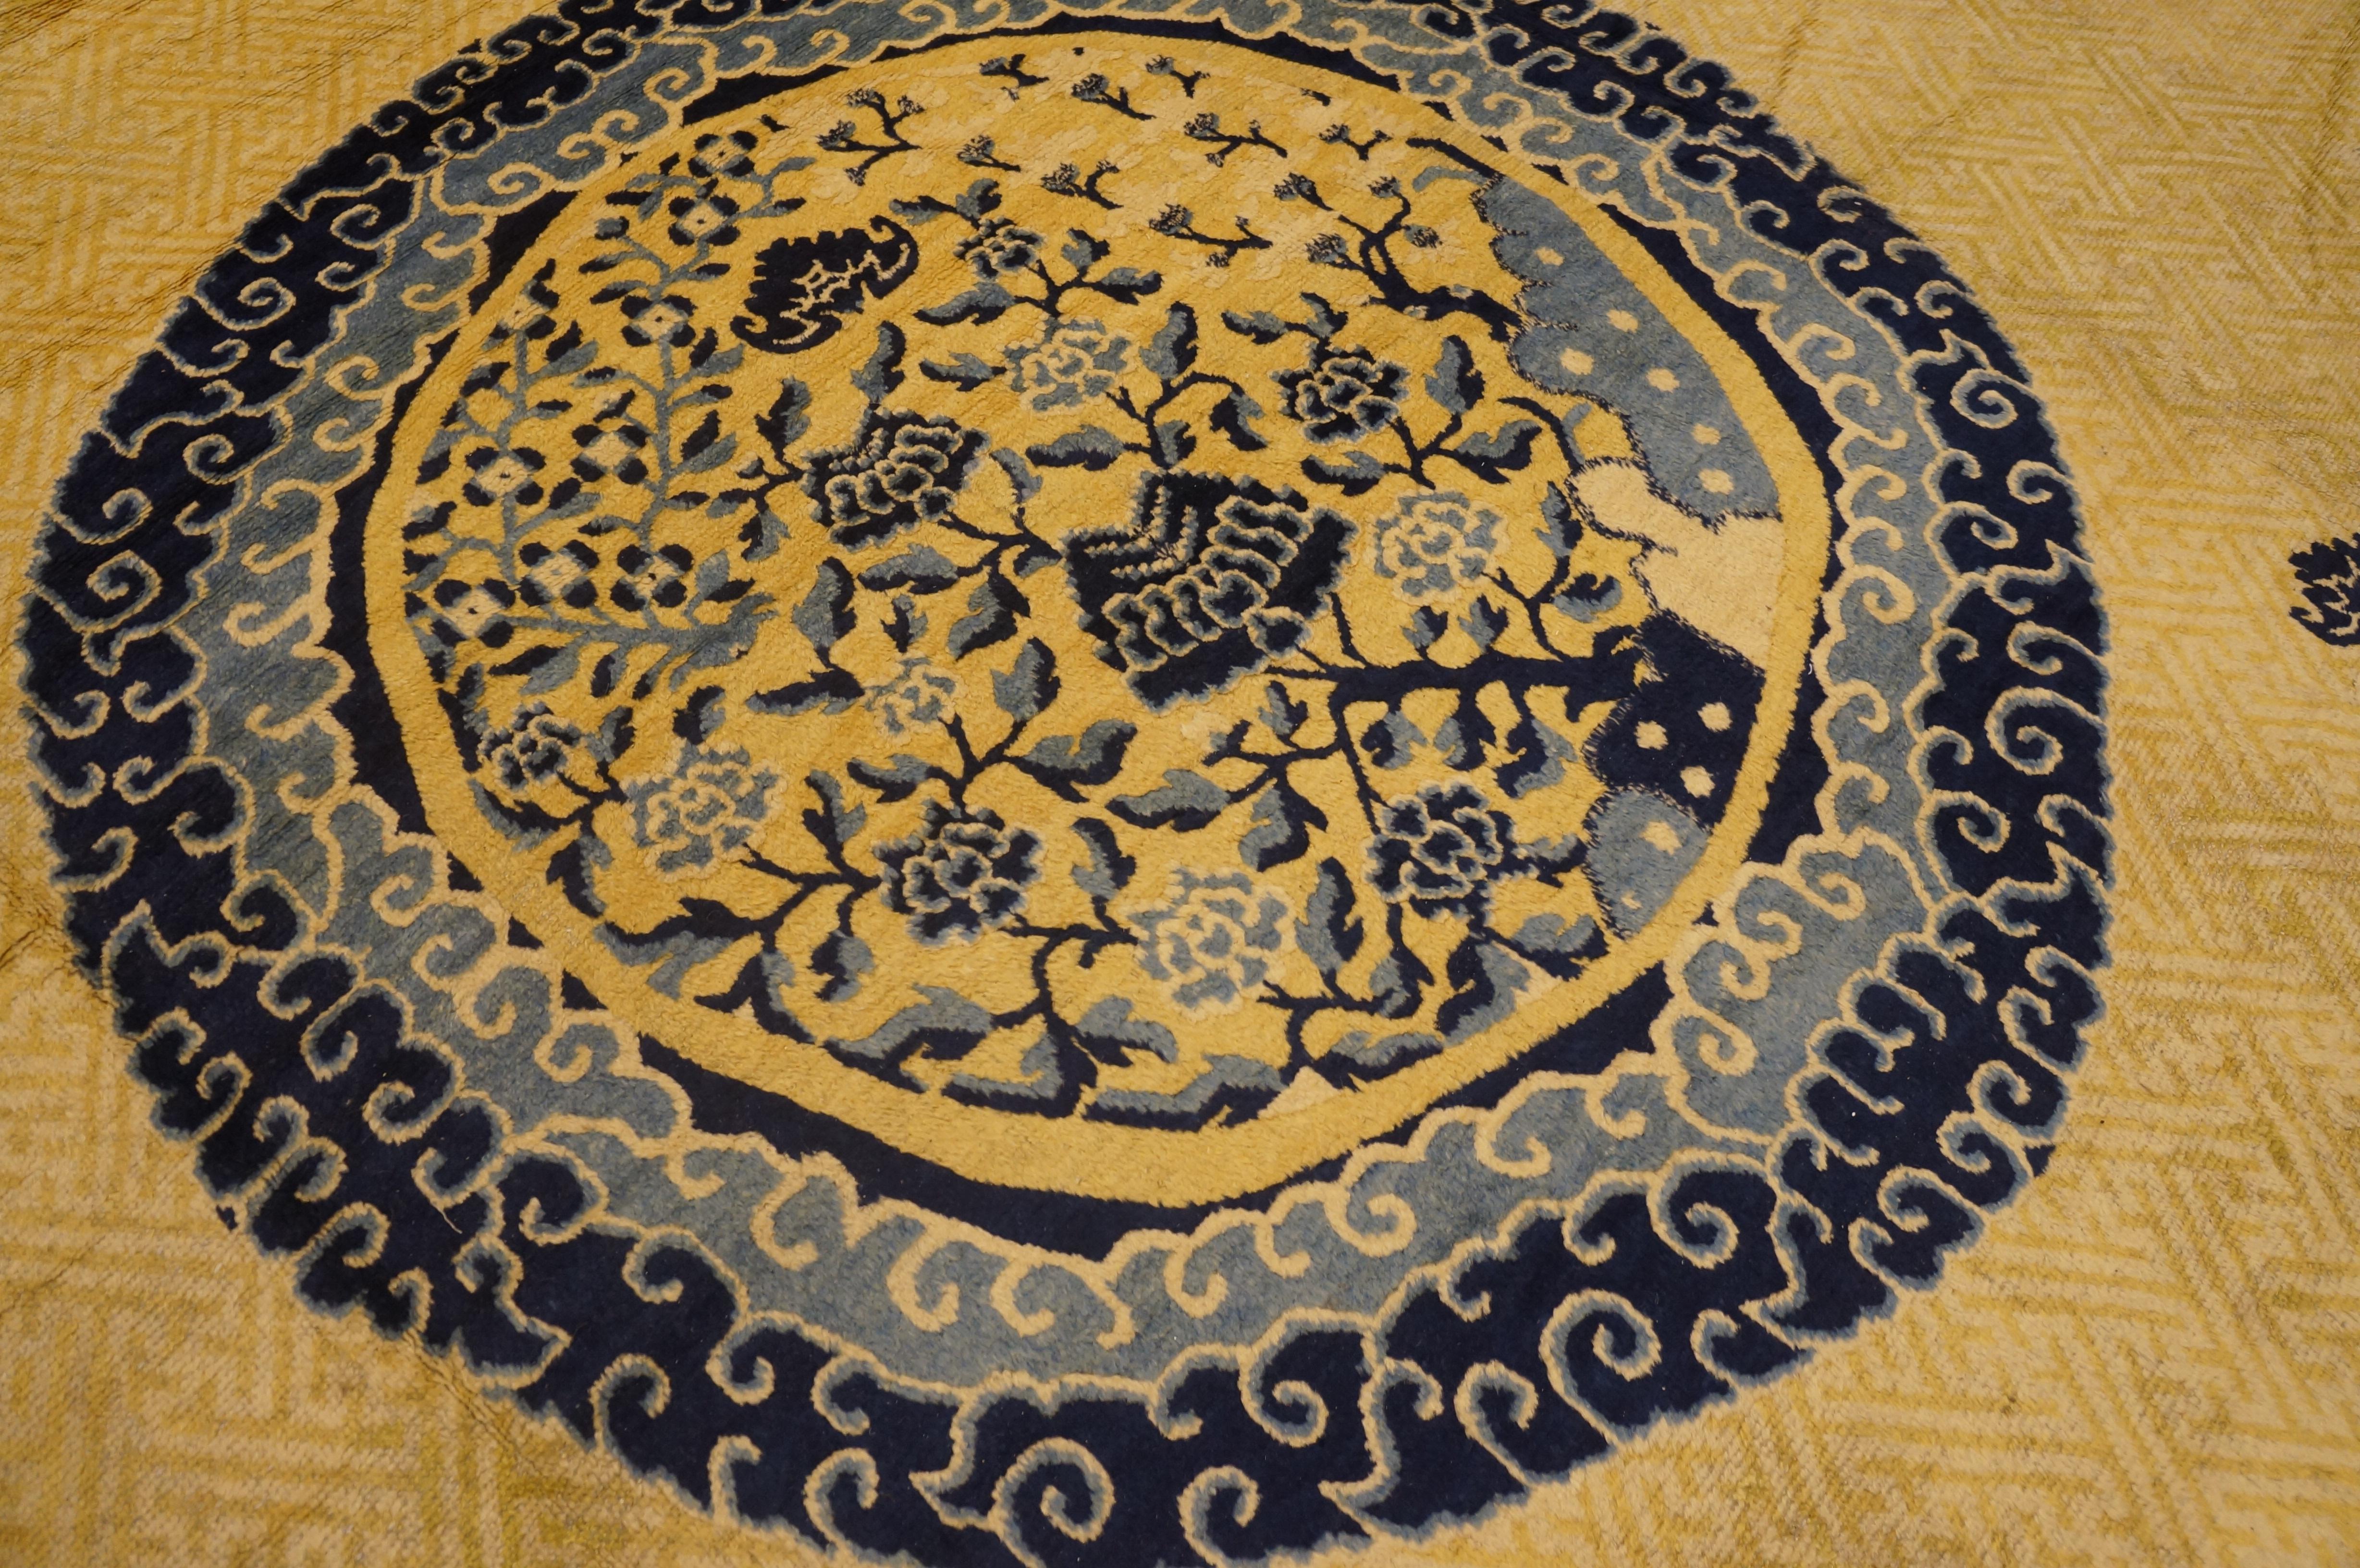 Chinesischer Ningxia-Teppich aus dem späten 18. Jahrhundert ( 412 x 503 cm - 13'6